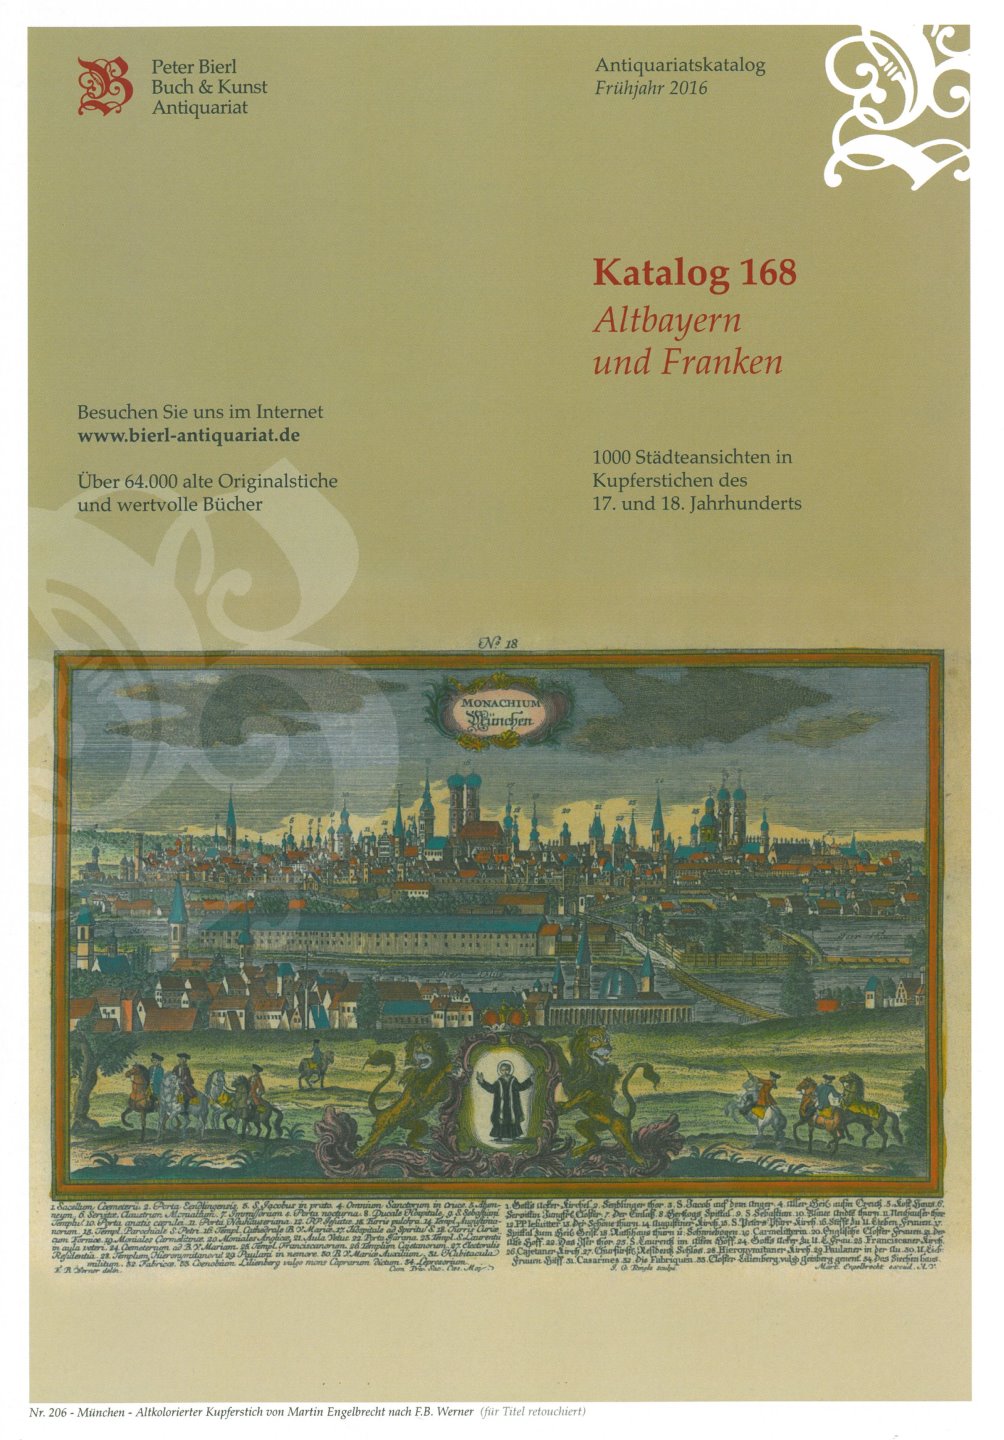 Katalog 168 - Altbayern und Franken